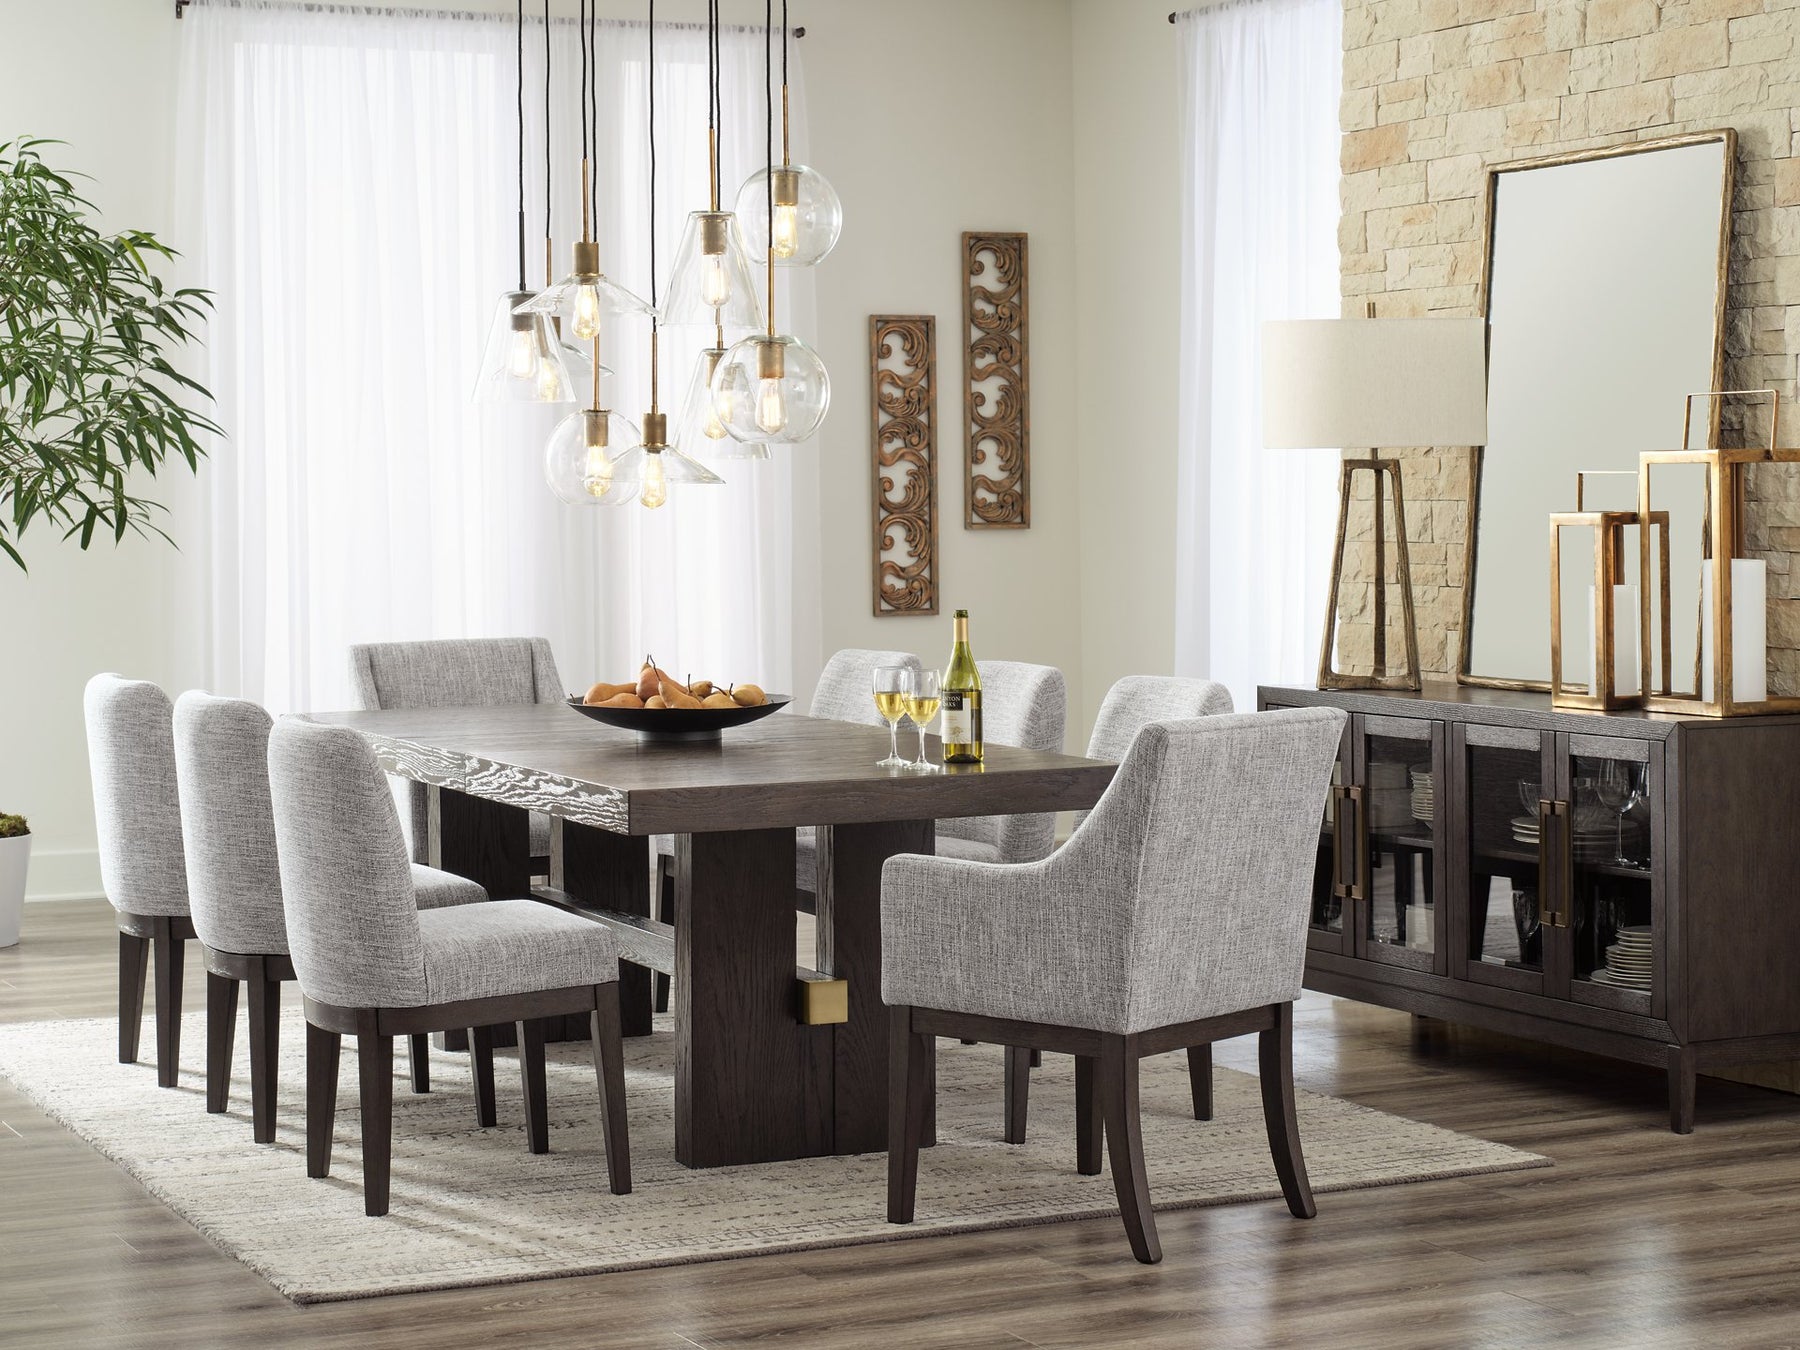 Burkhaus Dining Room Set - Half Price Furniture